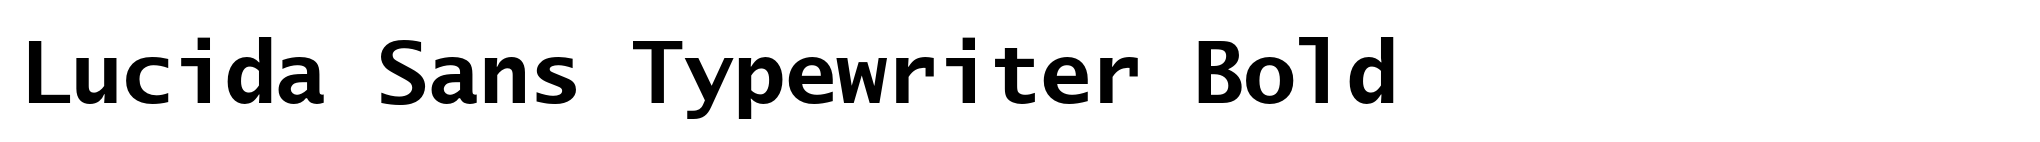 Lucida Sans Typewriter Bold image